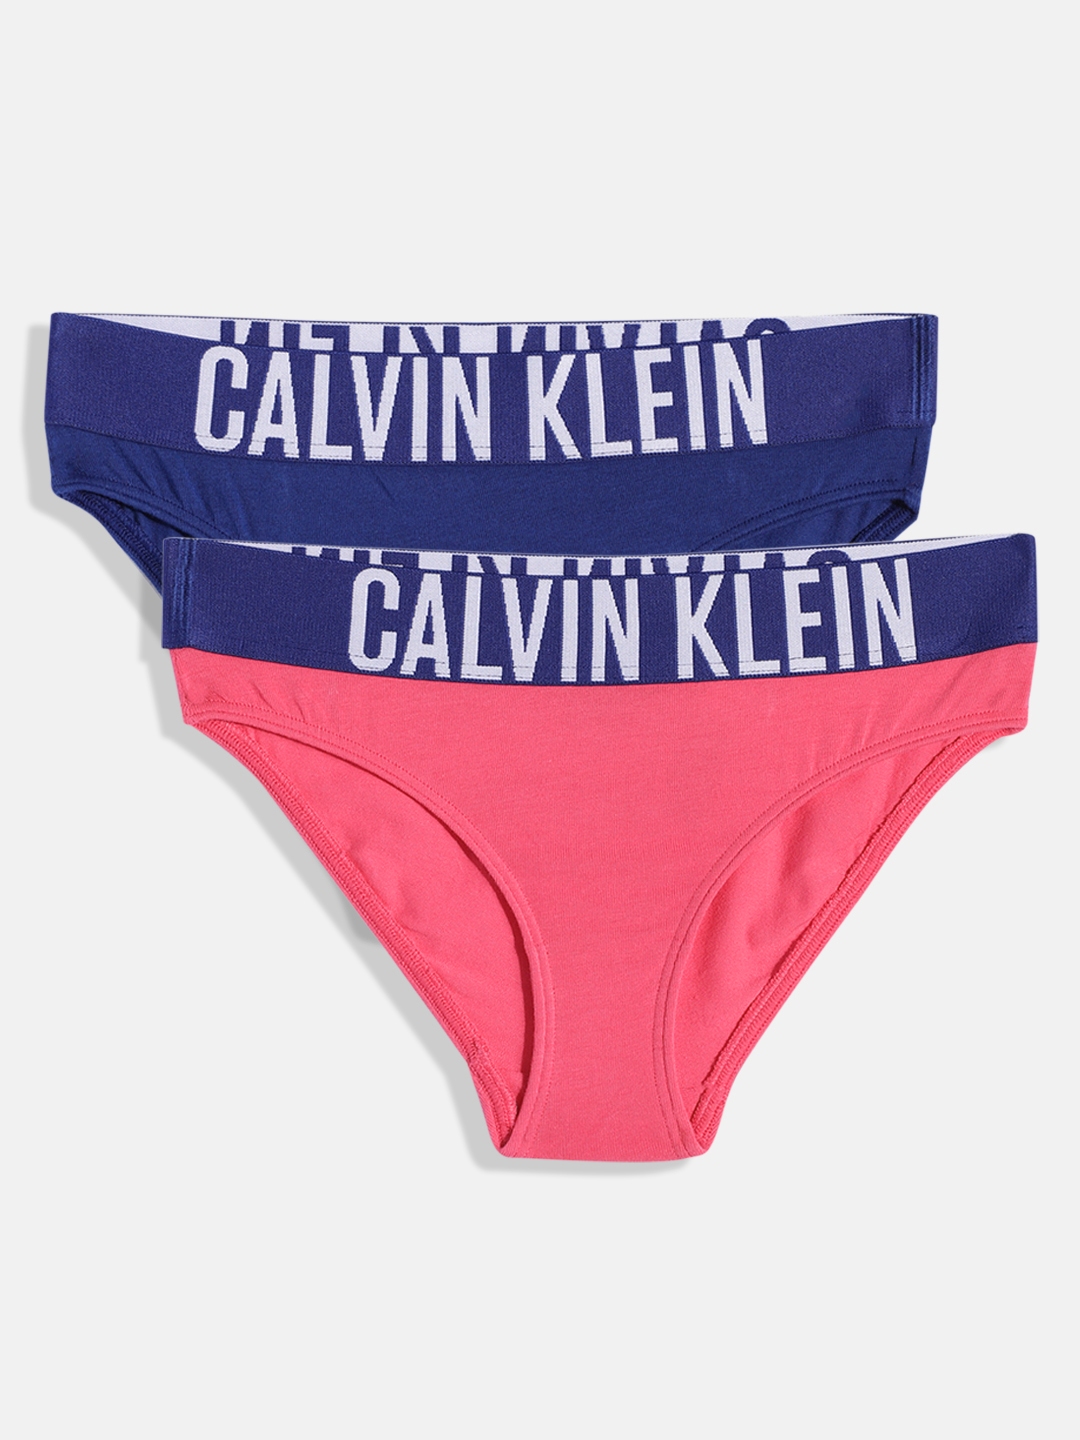 Buy Calvin Klein Underwear Girls Racer Back Bralette - Pack Of 2